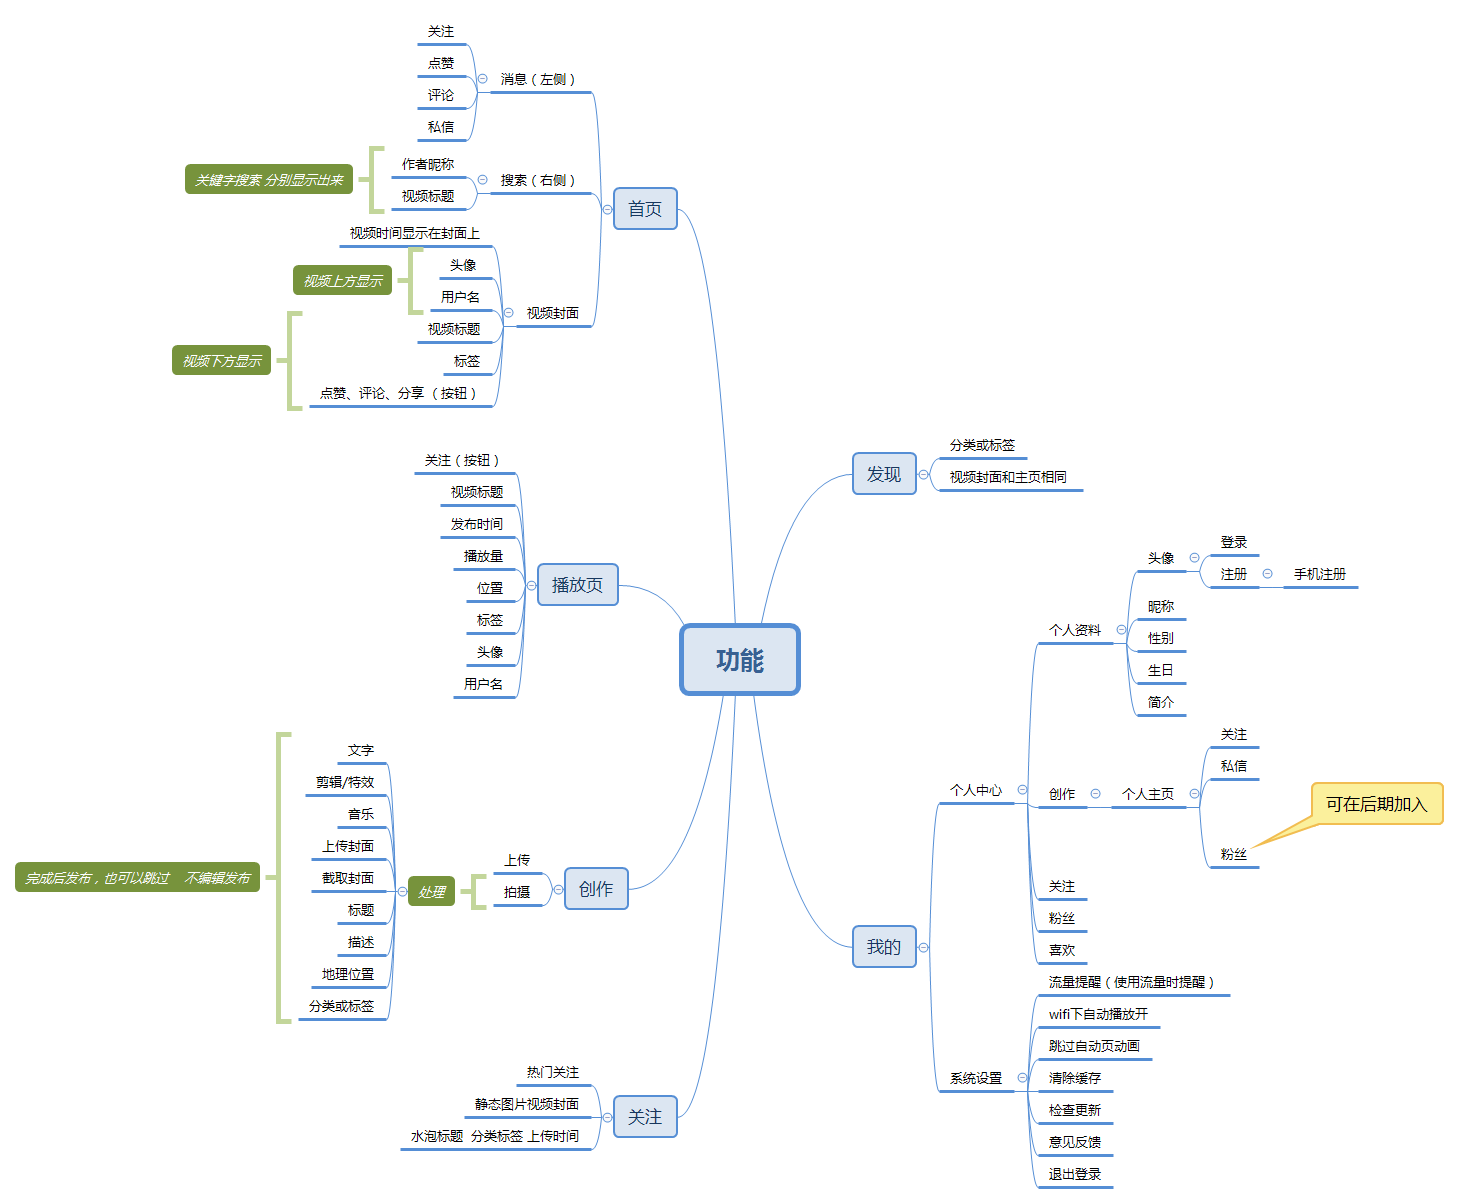 开发流程: 功能逻辑梳理:出功能逻辑图 ui页面设计:全套ui界面图 后台